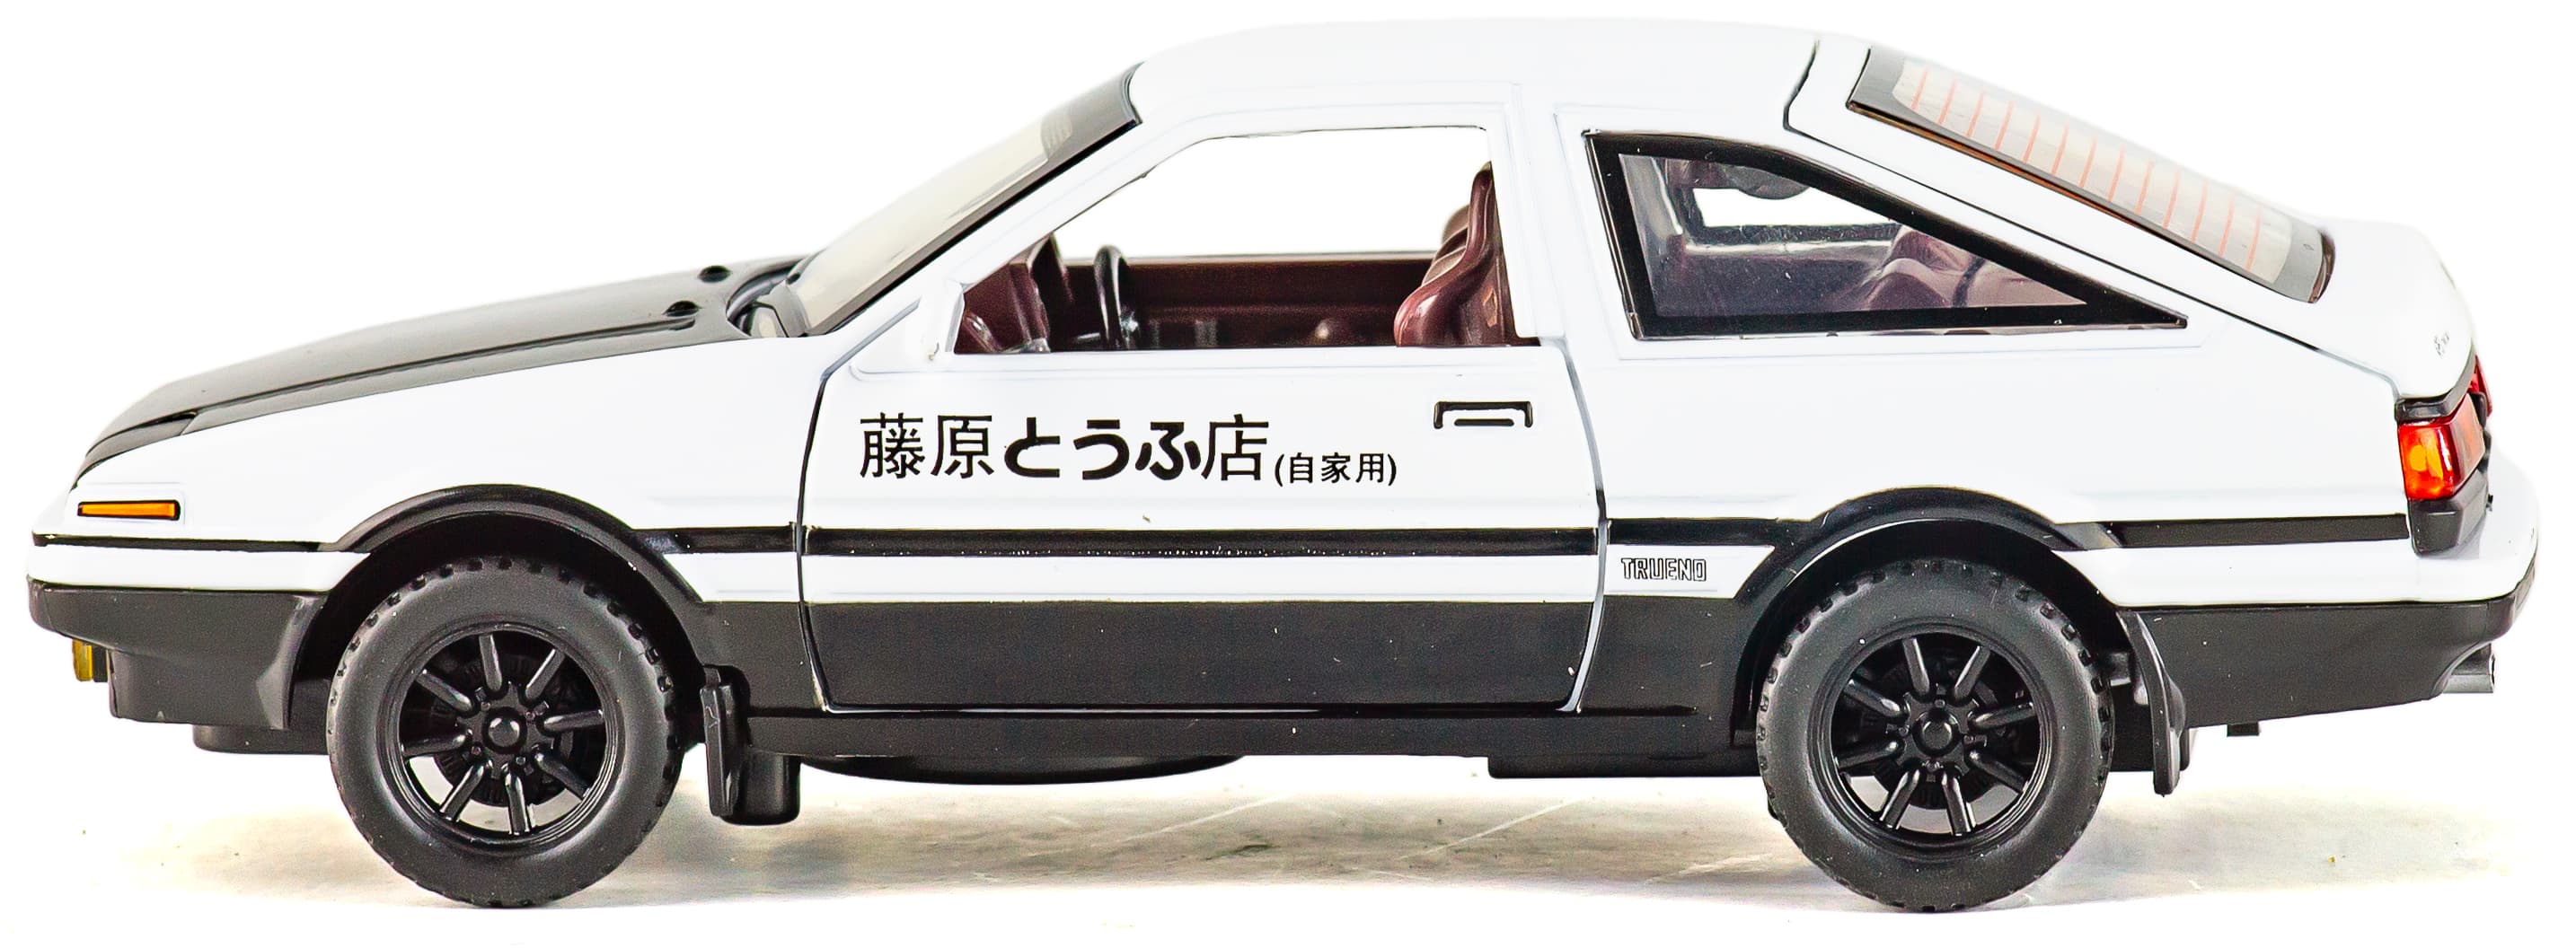 Металлическая машинка MiniAuto 1:28 «Toyota Sprinter Trueno AE86» 3241B инерционная, свет, звук / Бело-черный